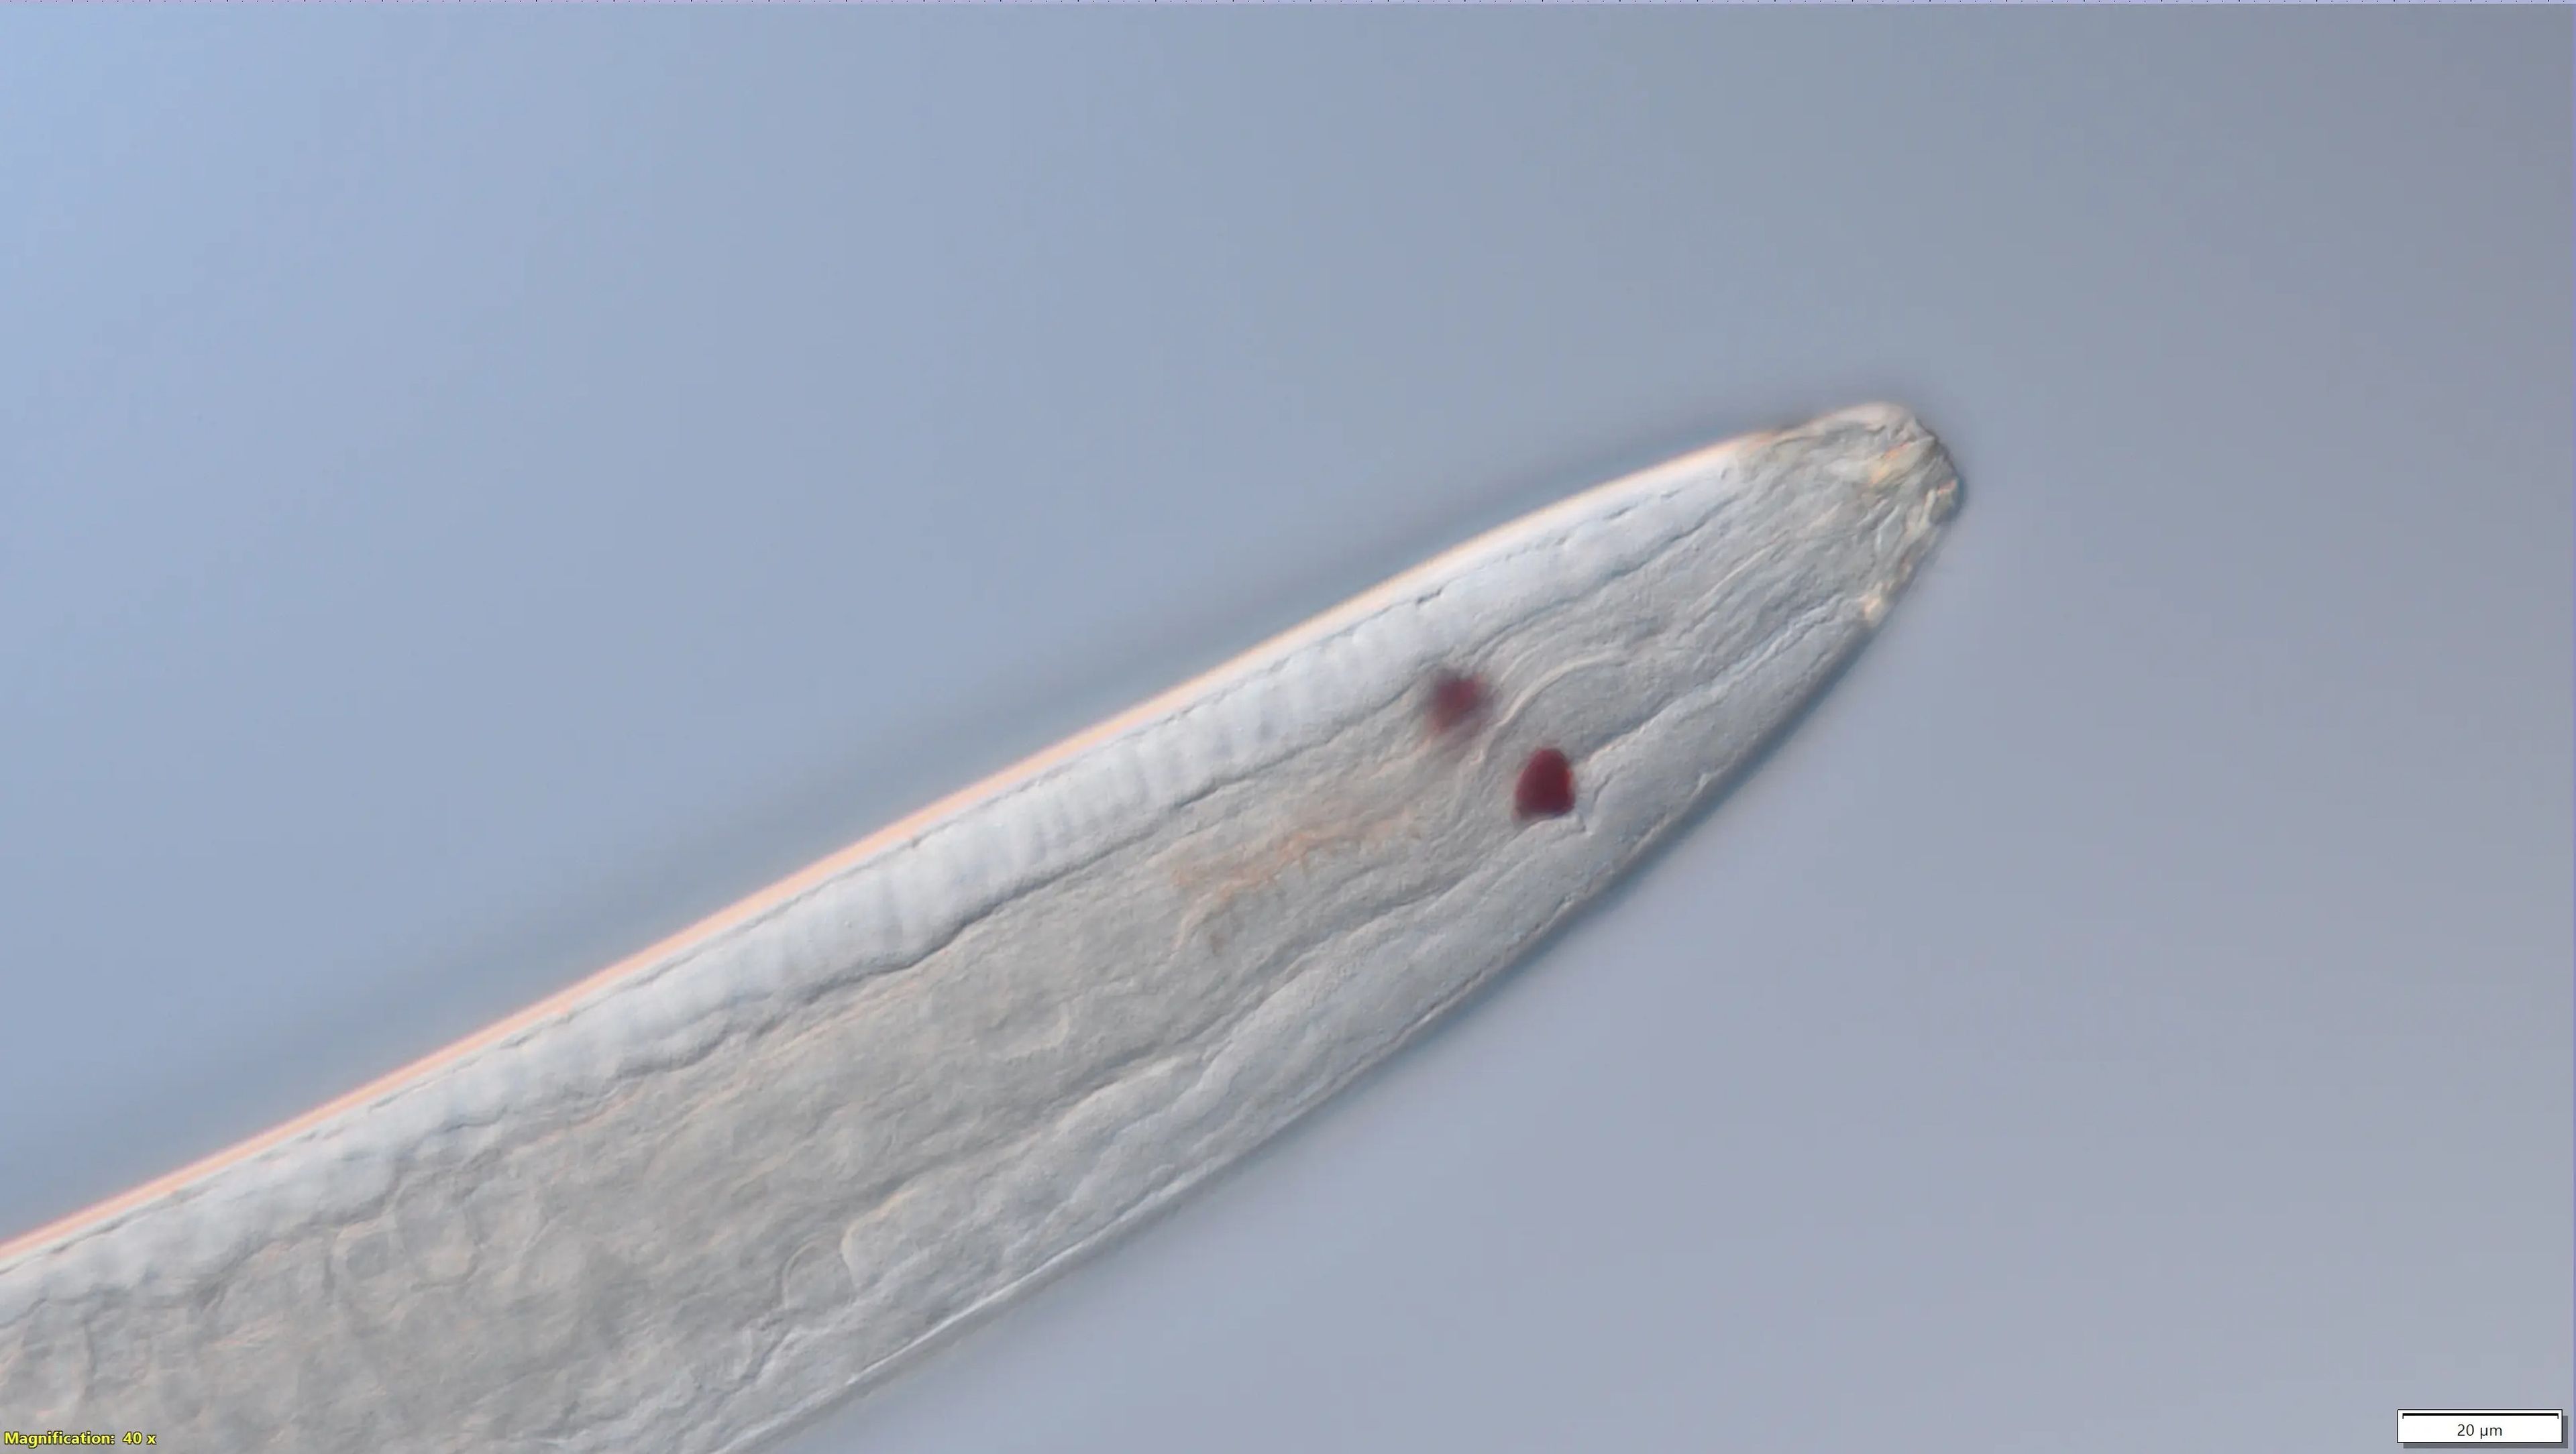 Los nematodos Thoracostoma tienen dos círculos rojos que parecen ojos y le ayudan a percibir la luz, según creen los científicos.